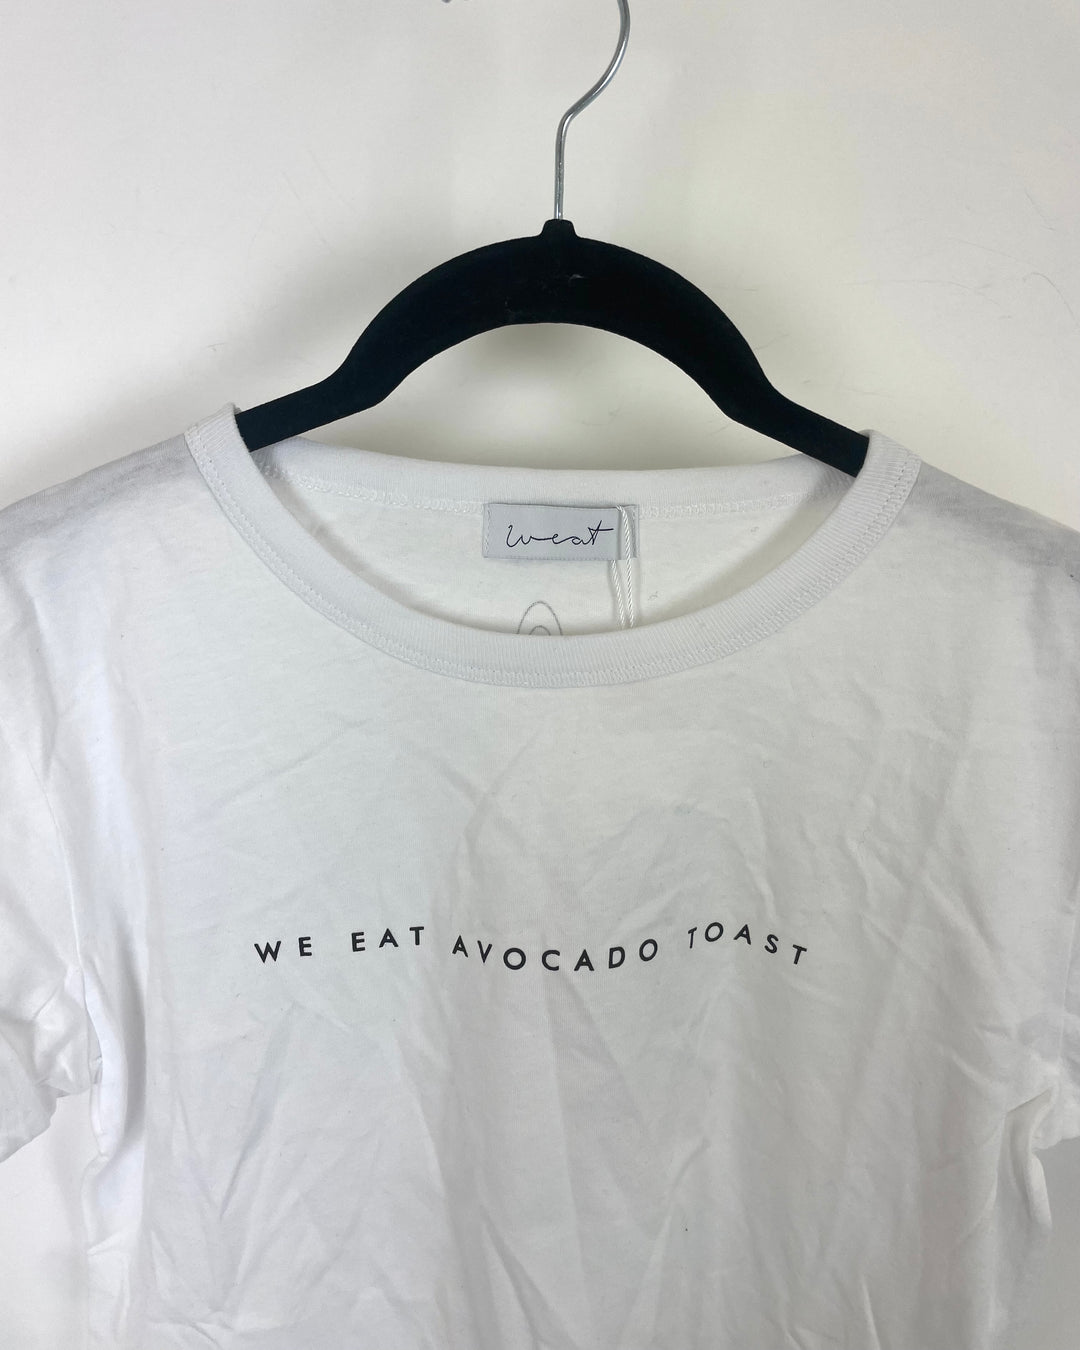 White Avocado Toast T-Shirt - Size 2/4